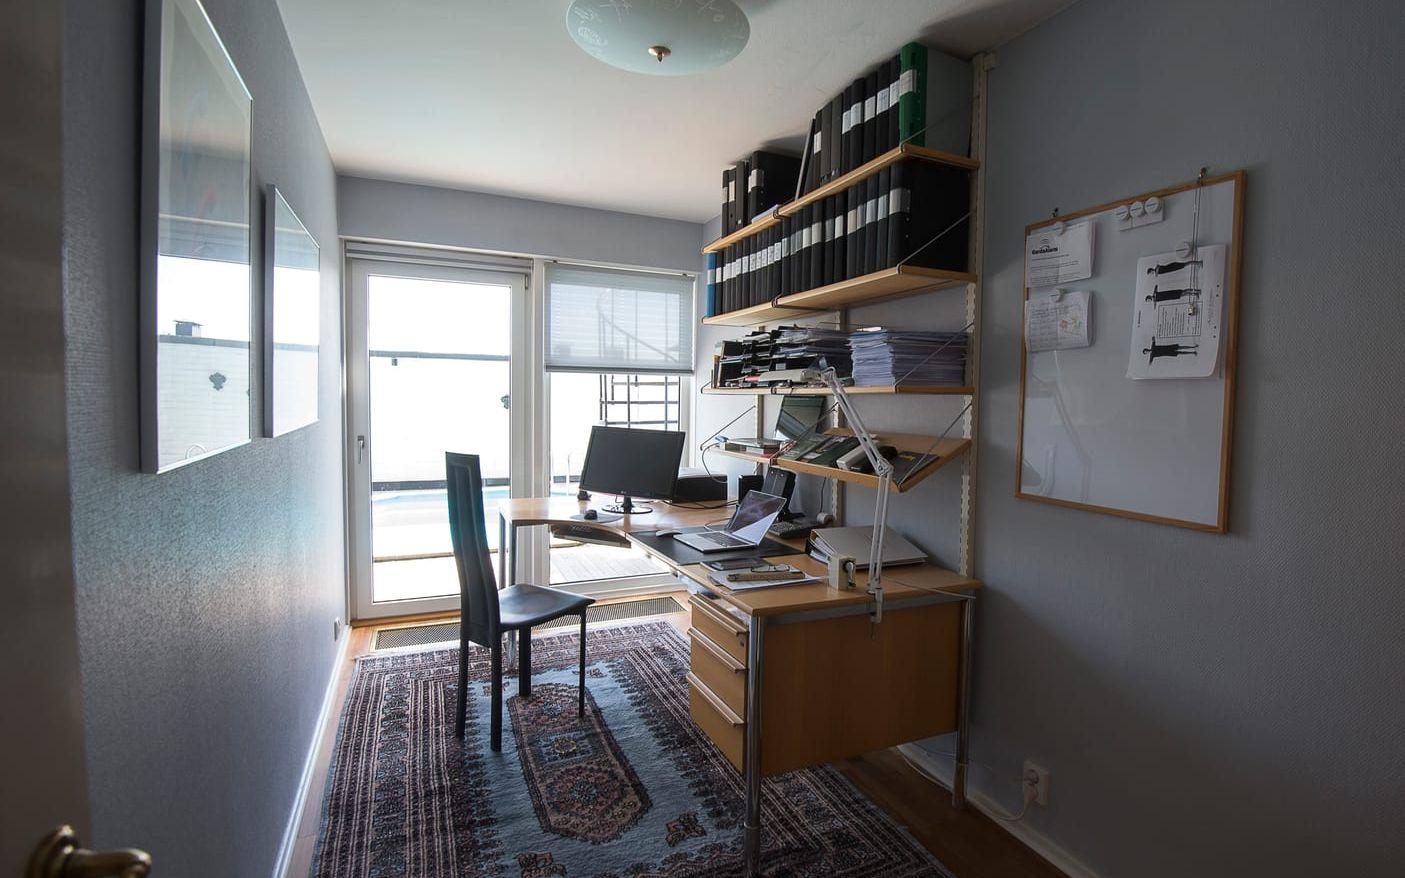 Ett av sovrummen används just nu som kontor. Bild: Jörgen Alström